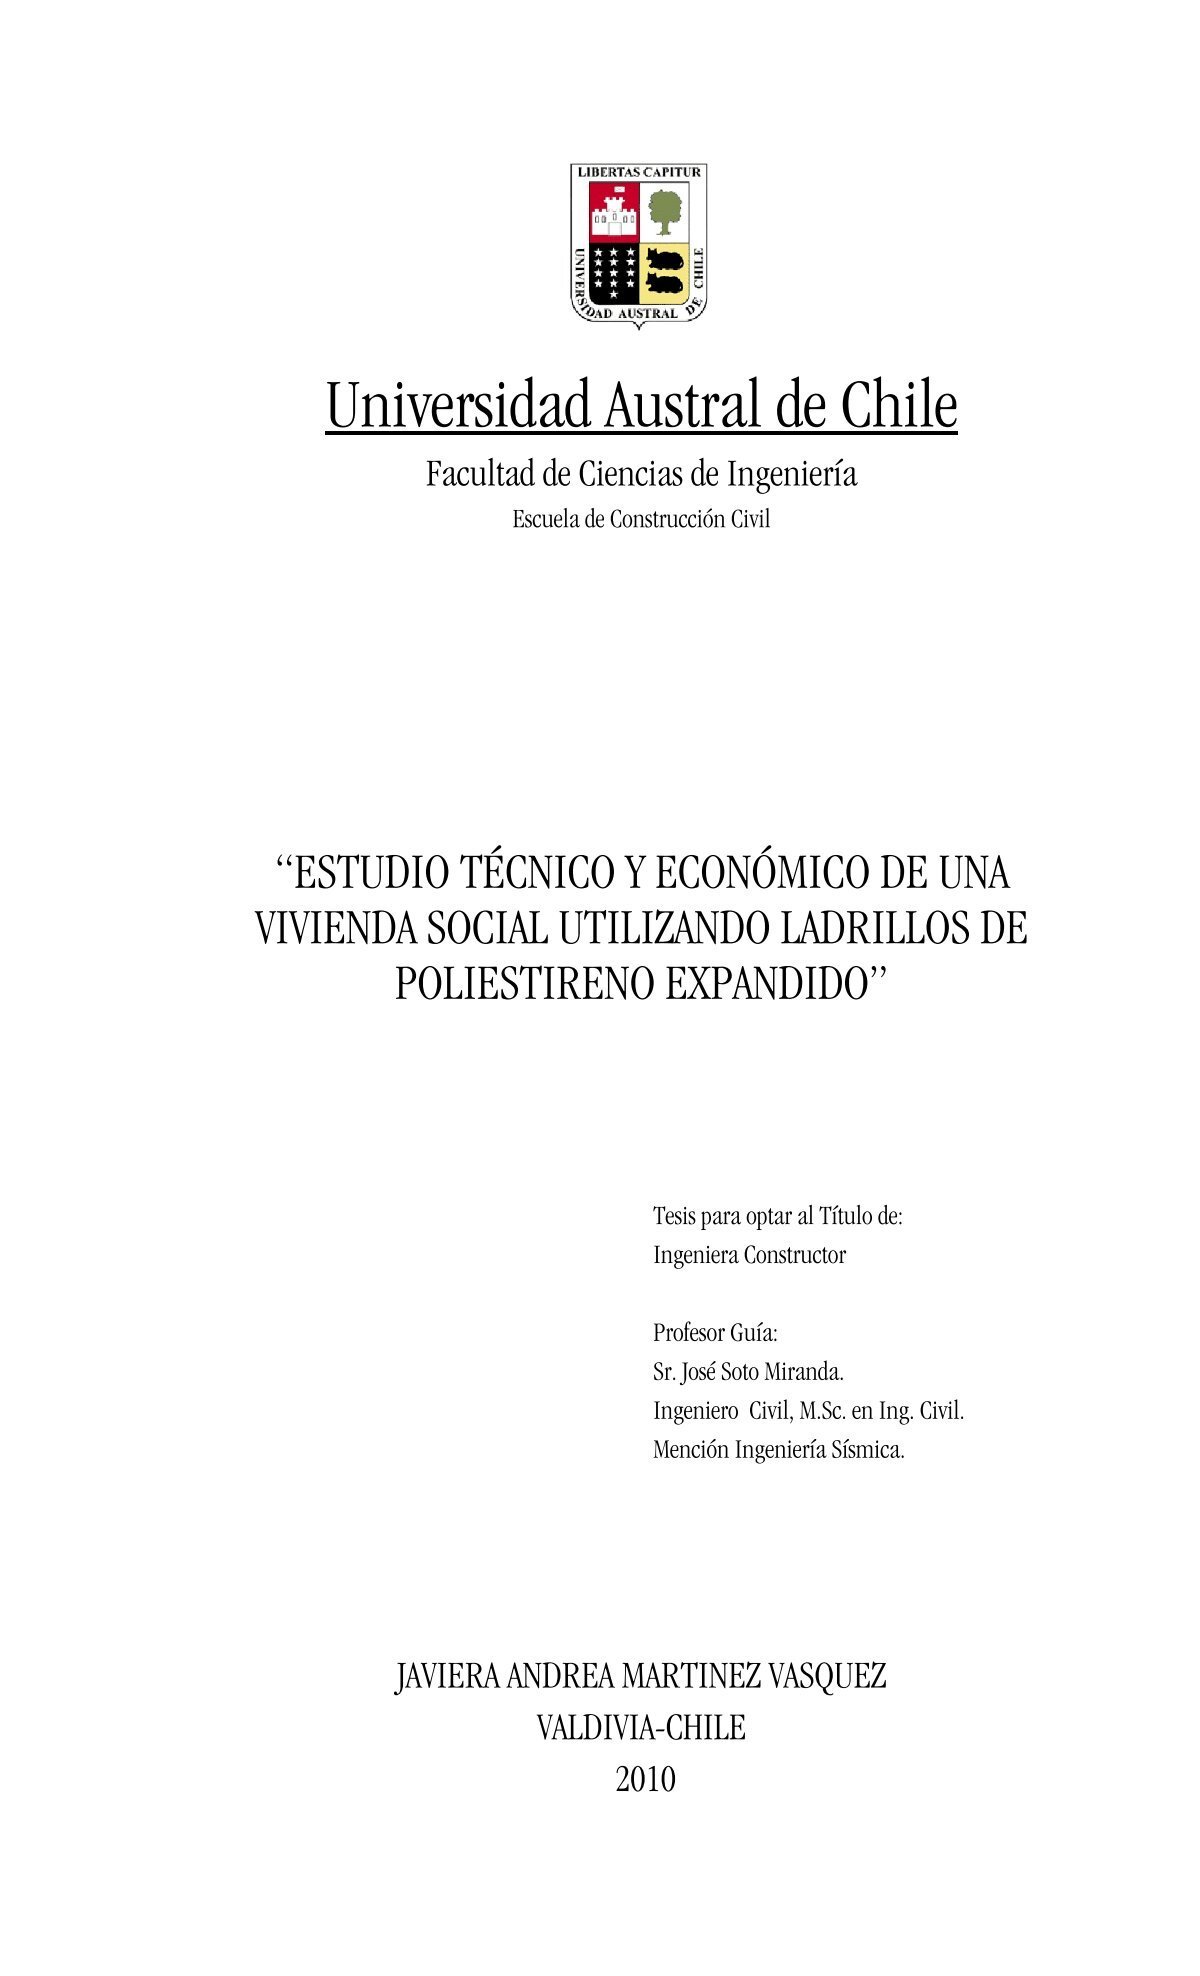 Universidad Austral de Chile - CyberTesis UACh - Universidad